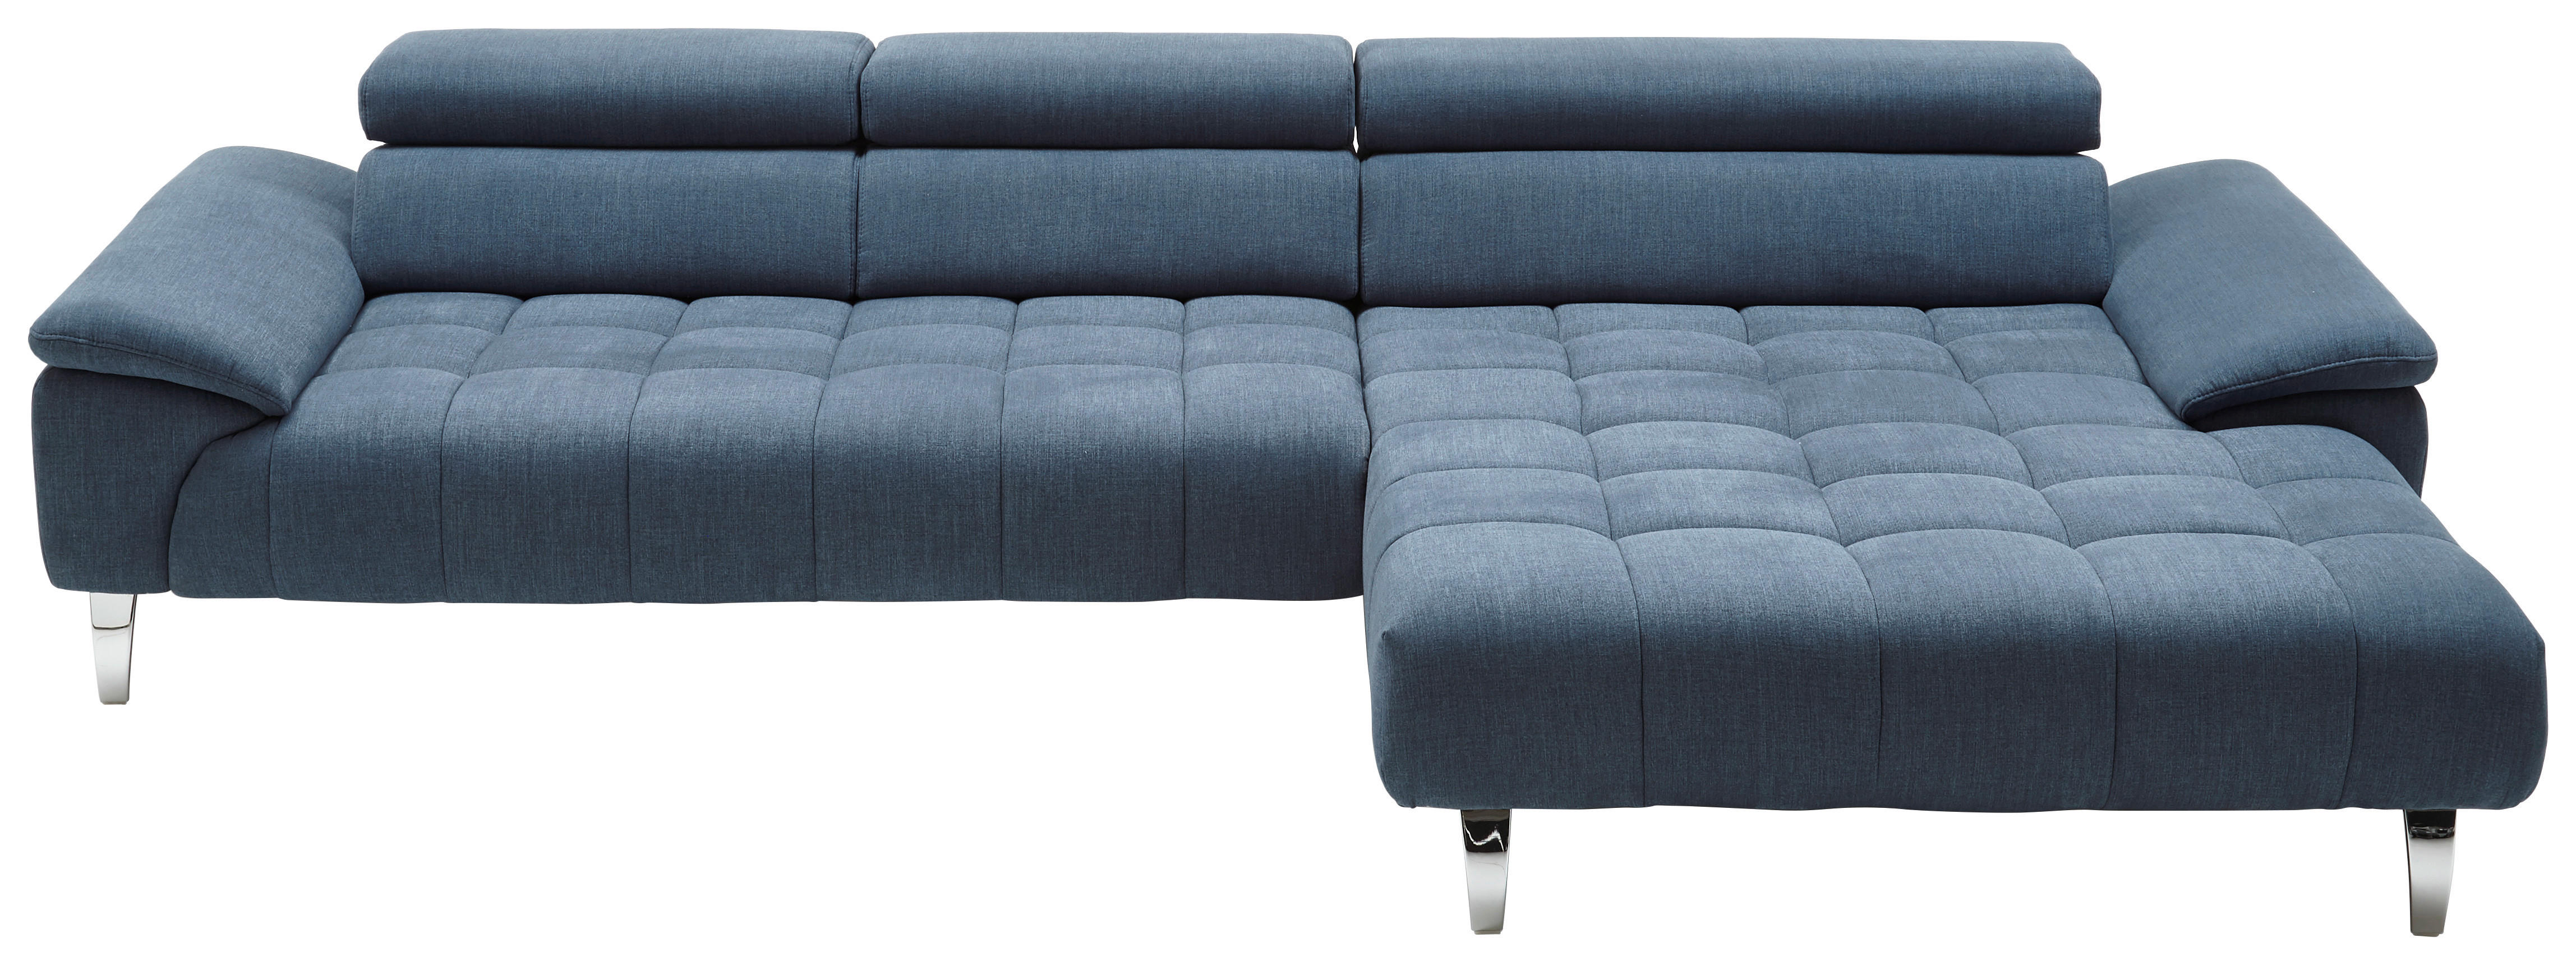 WOHNLANDSCHAFT Blau Mikrofaser  - Chromfarben/Blau, Design, Textil (329/190cm) - Beldomo Style